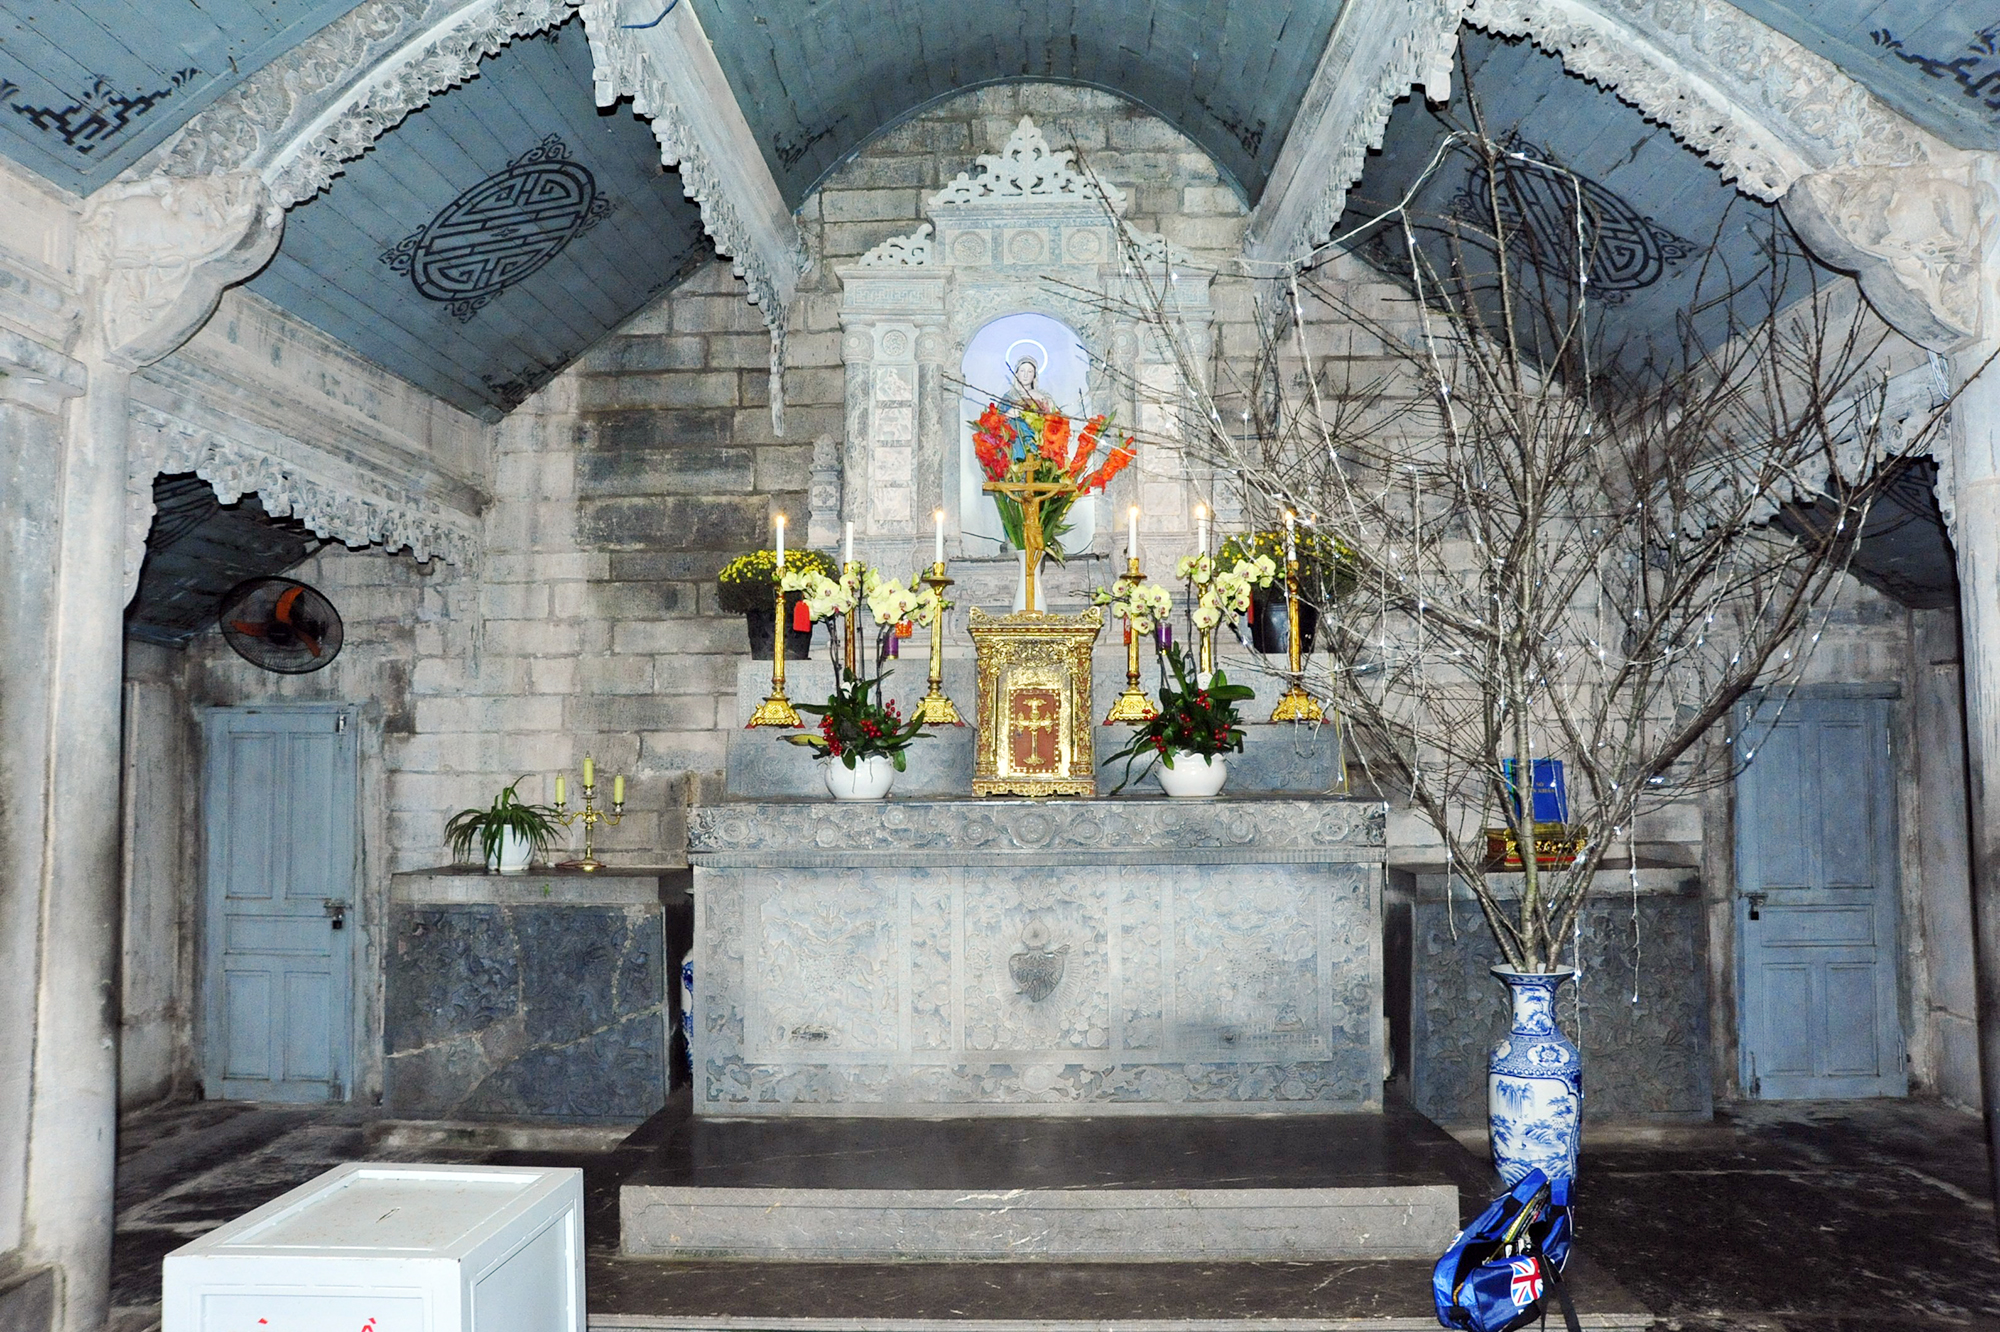 Chiêm ngắm ngôi nhà thờ được làm hoàn toàn bằng đá ở Ninh Bình - Ảnh 5.